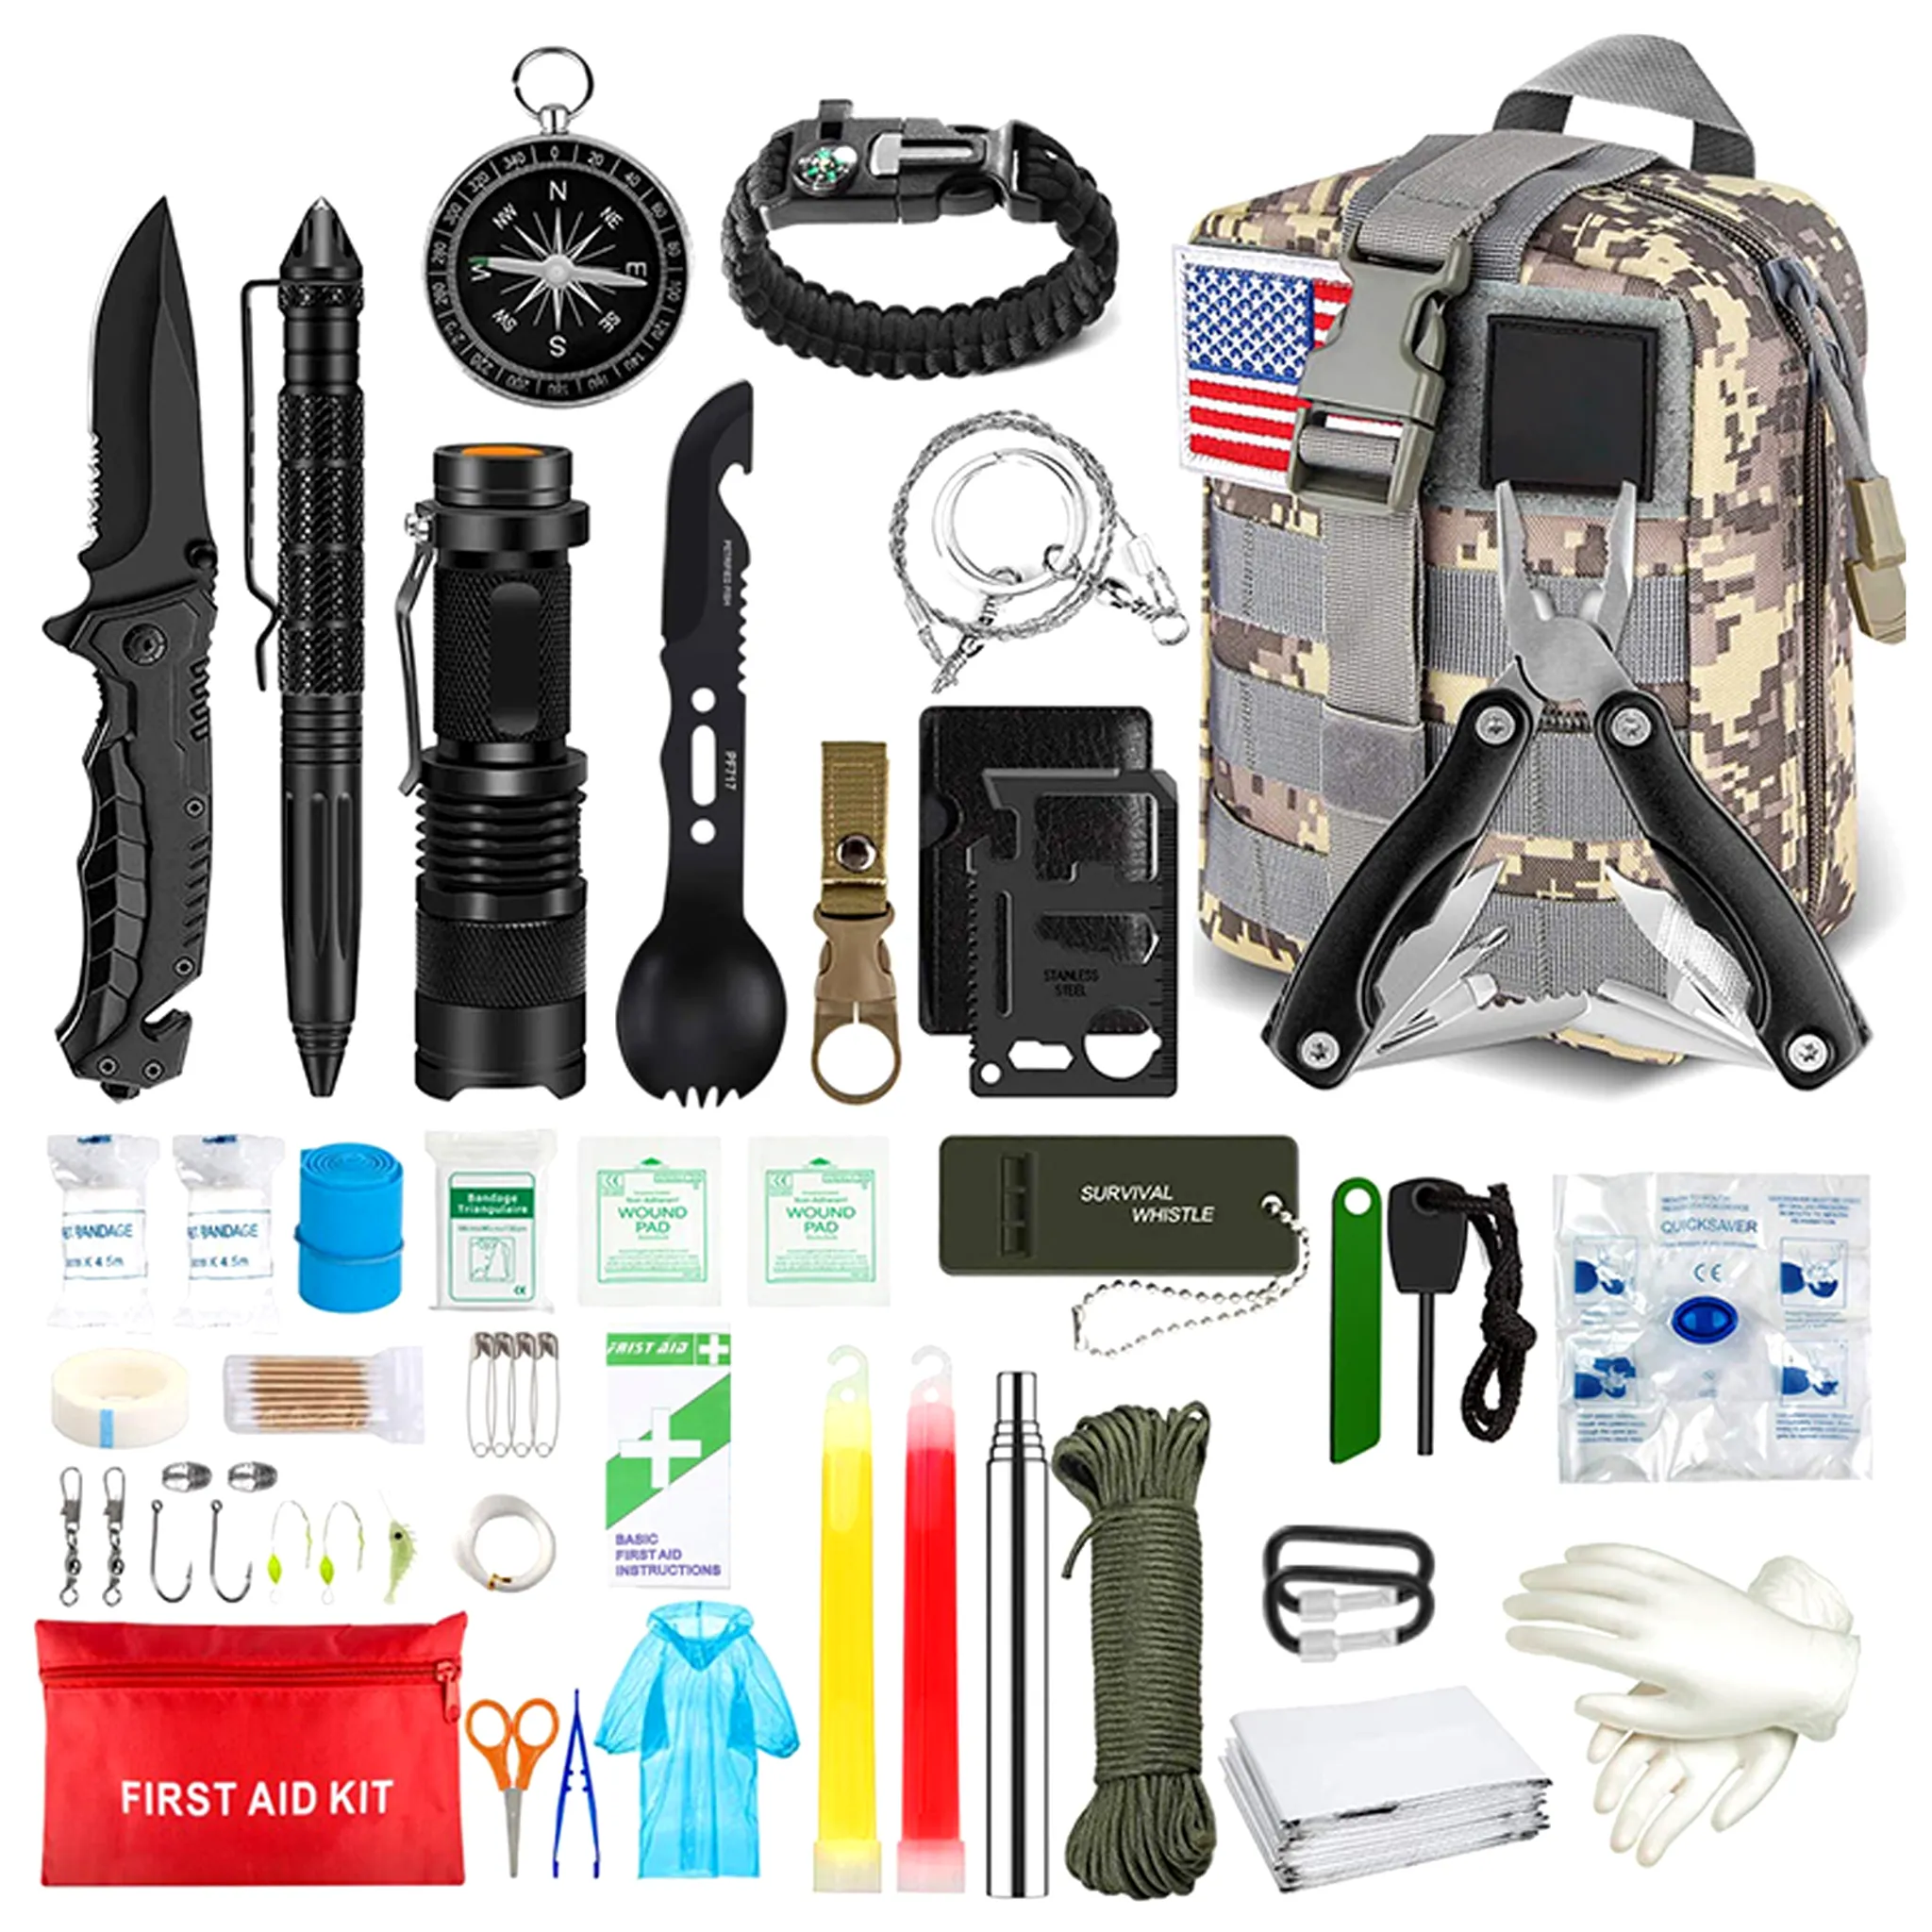 Neu GIGANTISCH Survival Kit ZS-9 Militärisches Überlebenskit 57-in-1 Erste-Hilfe-Kit Multifunktionales Zubehör für Reisen Wandern Camping Outdoor Sport 